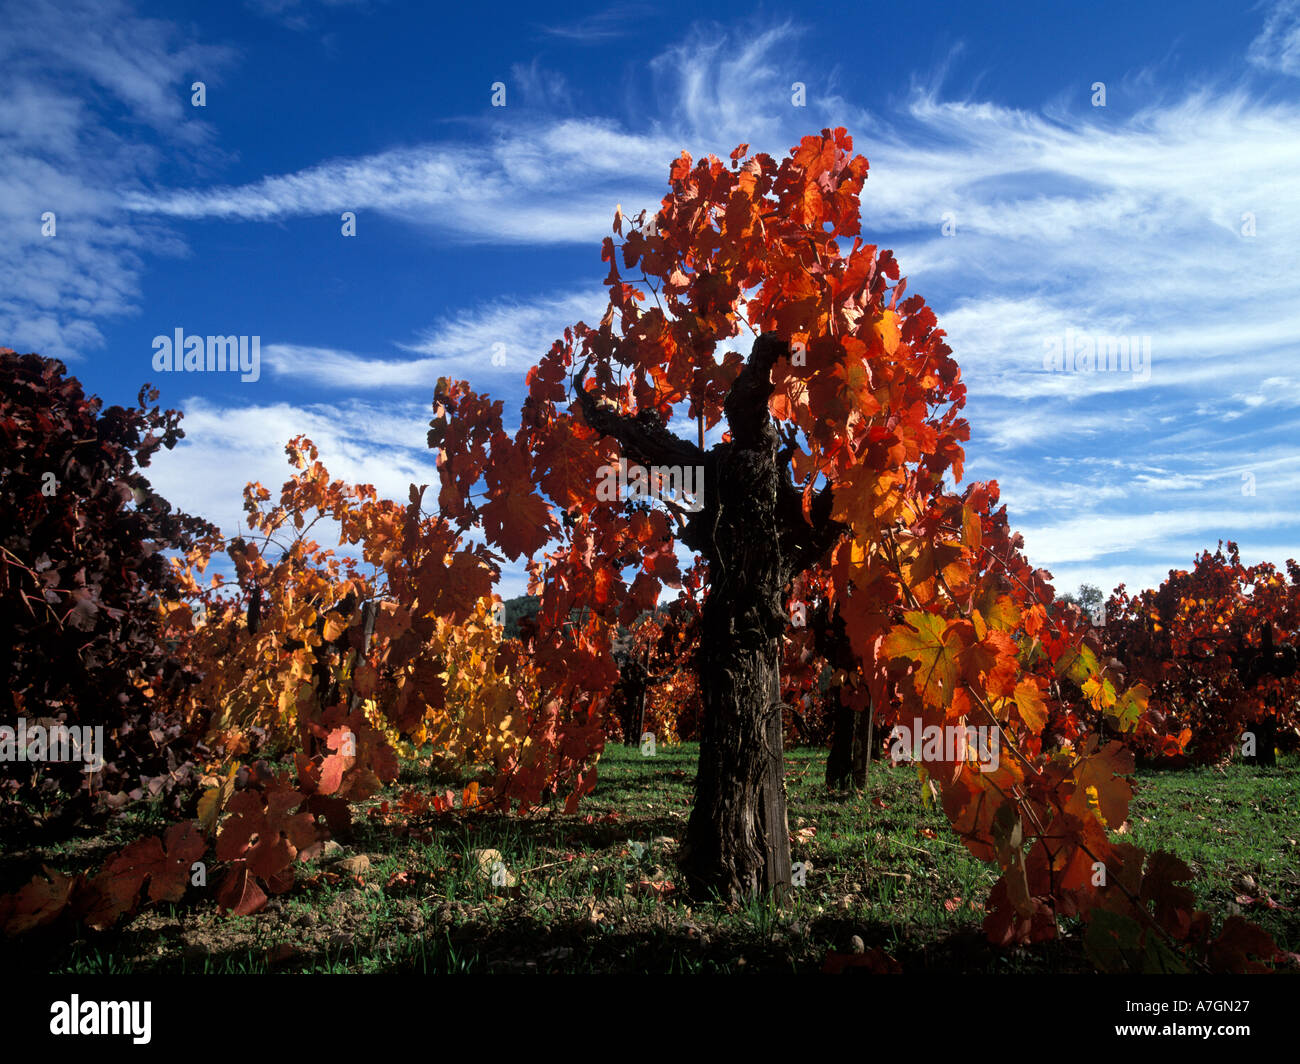 California, Napa Valley, Calistoga. Lungo il sentiero Silverado, Zinfandel vigneti girare rosso fuoco in autunno Foto Stock